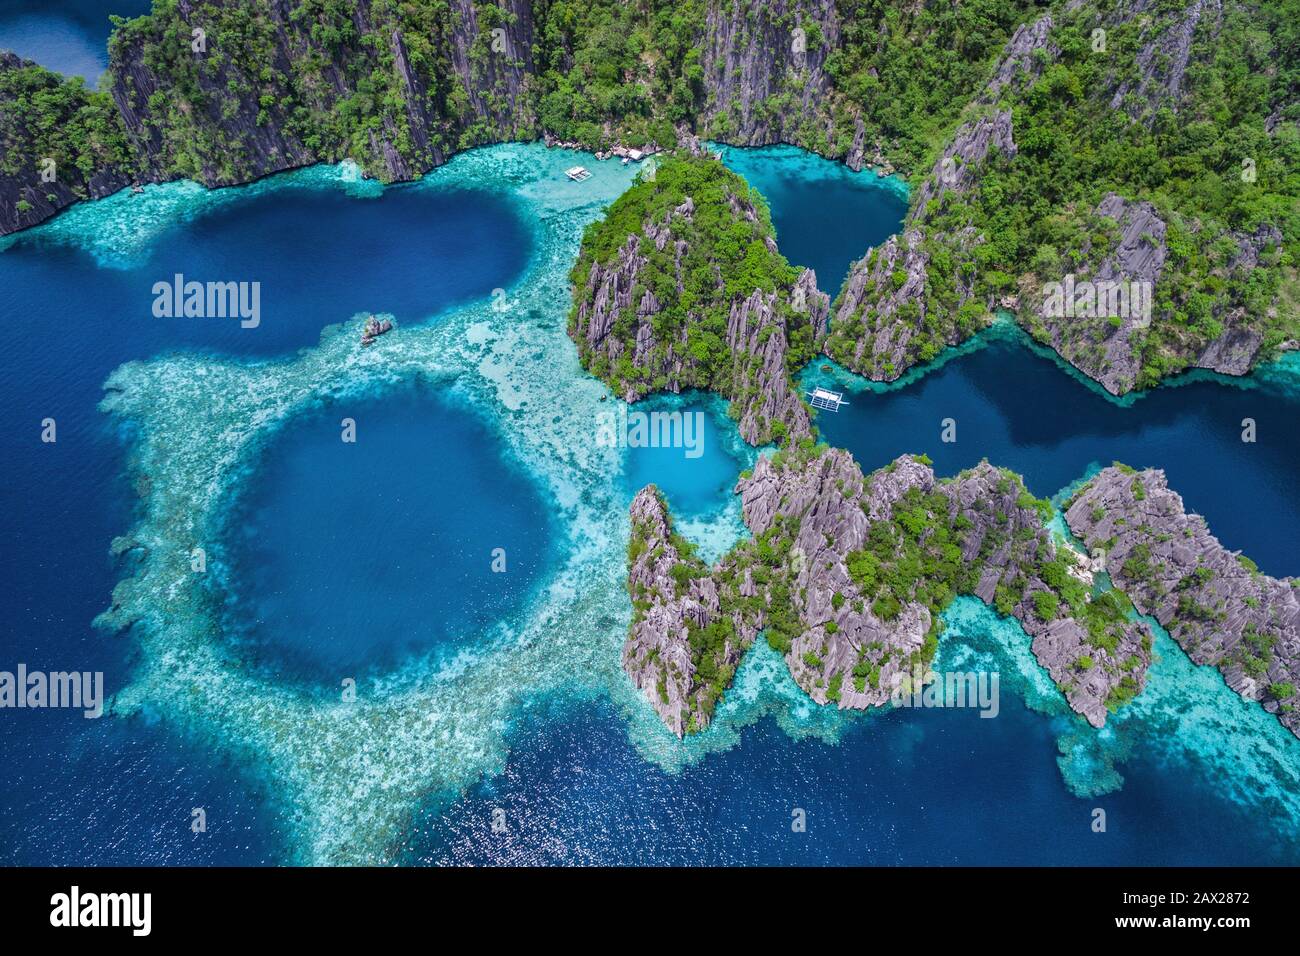 Isola di Coron, Palawan, Filippine, vista aerea di belle lagune e scogliere calcaree. Foto Stock